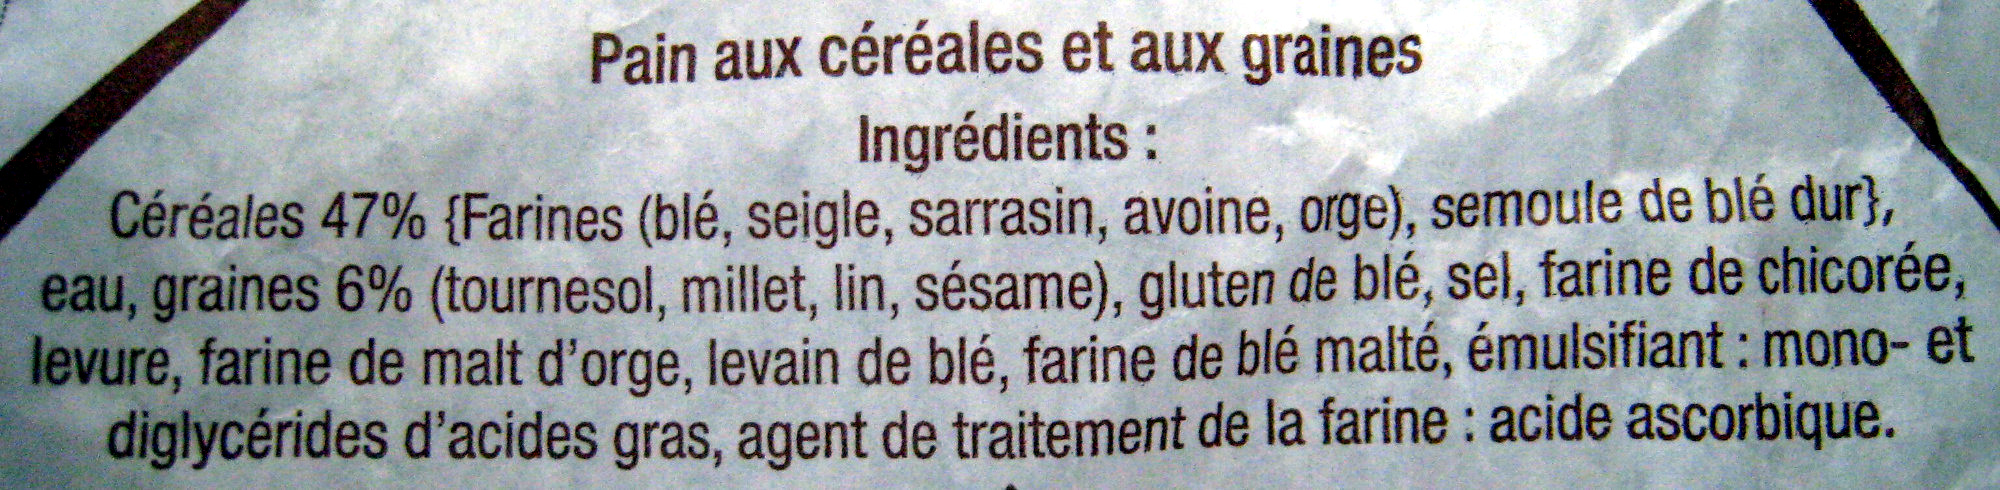 Baguette Céréales Carrefour - Ingrédients